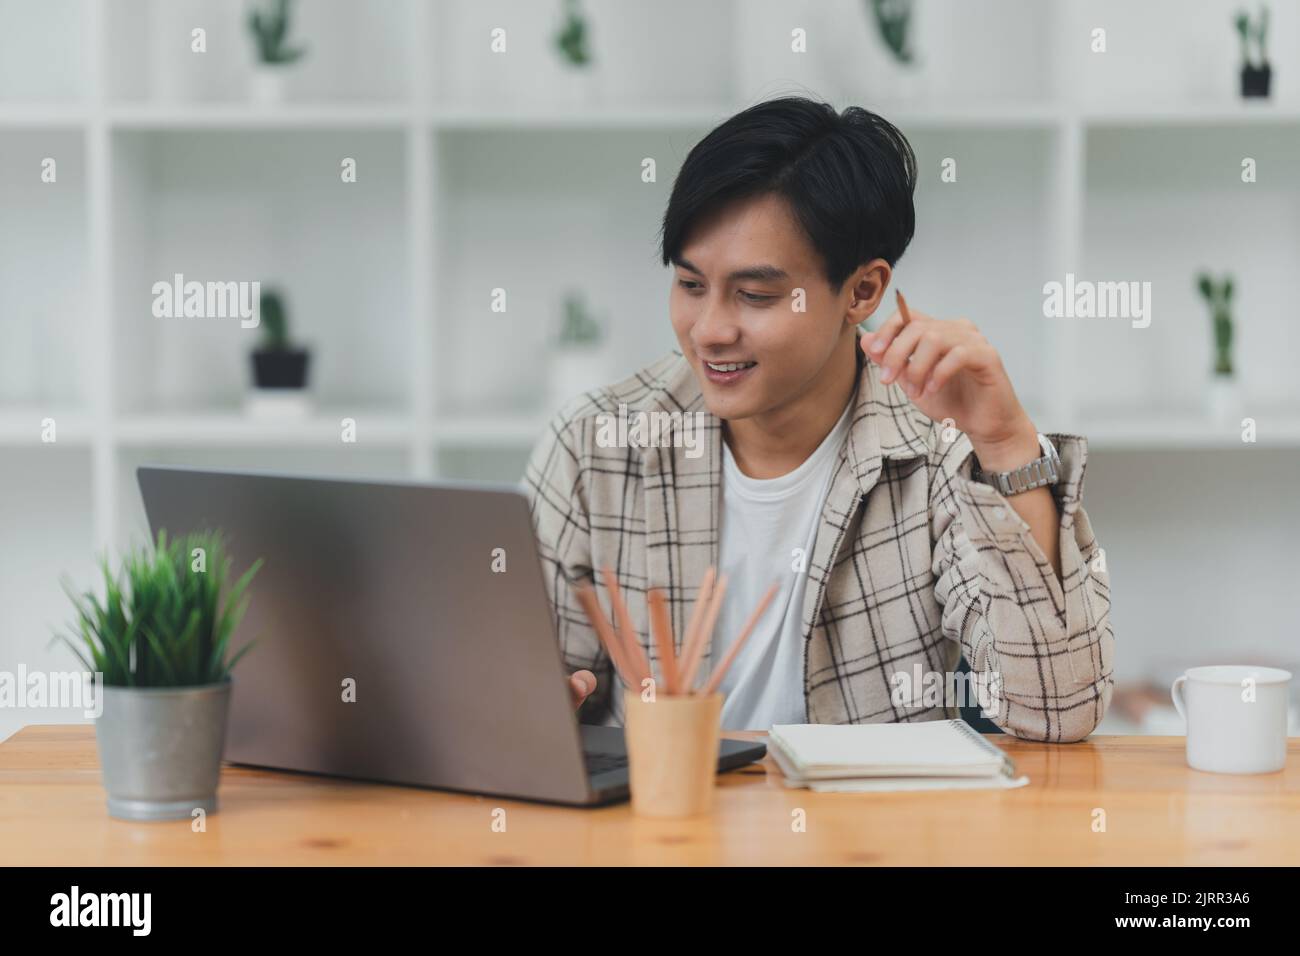 Homme asiatique utilisant un ordinateur portable travaillant au bureau Banque D'Images